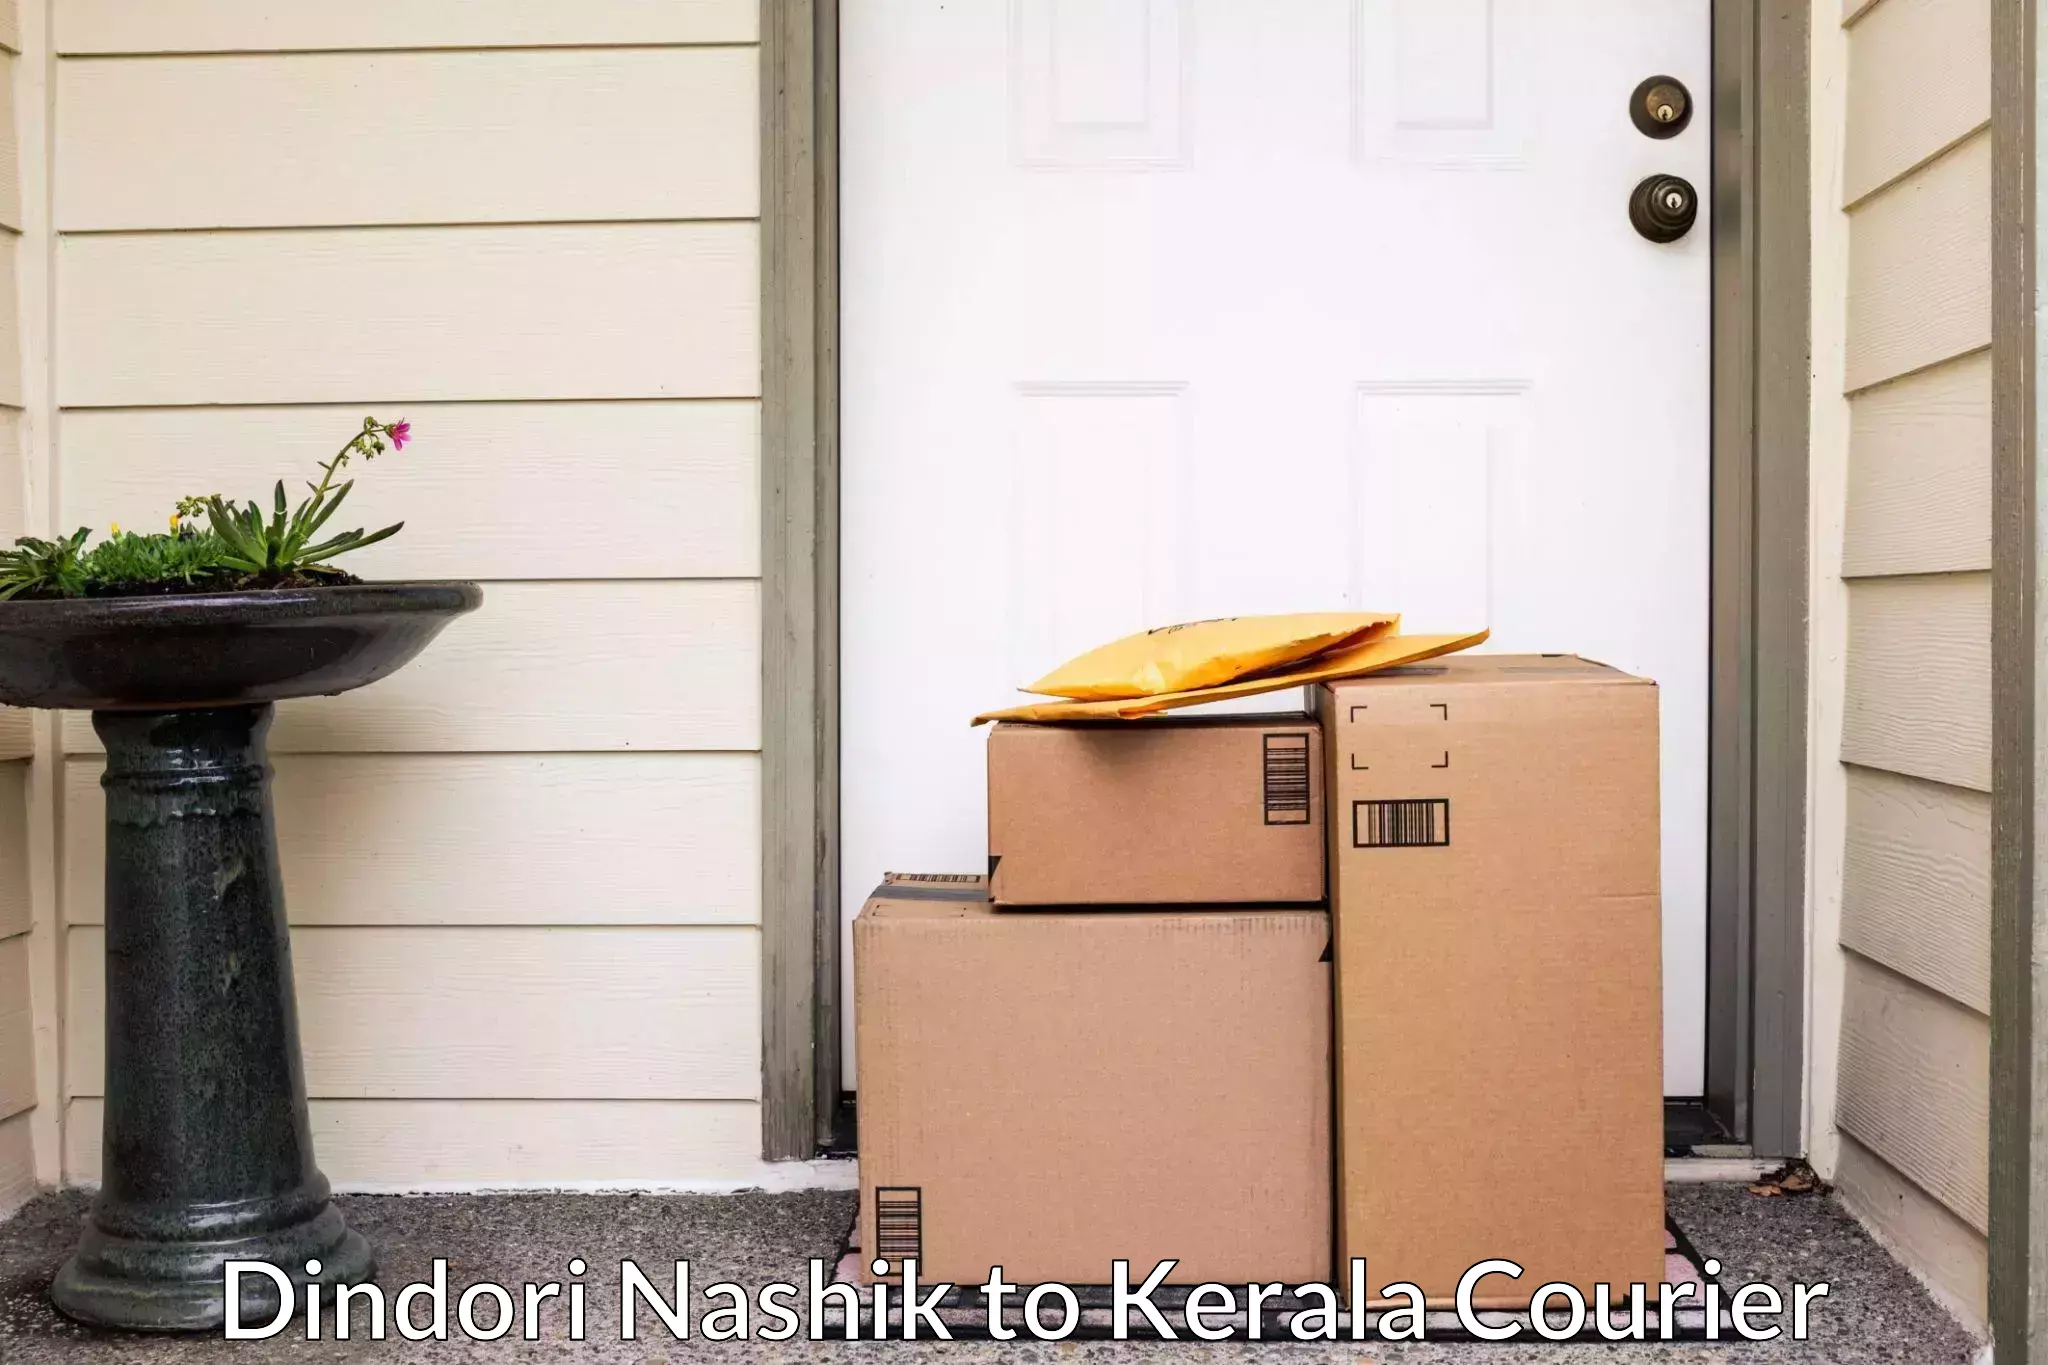 Professional furniture transport Dindori Nashik to Kerala